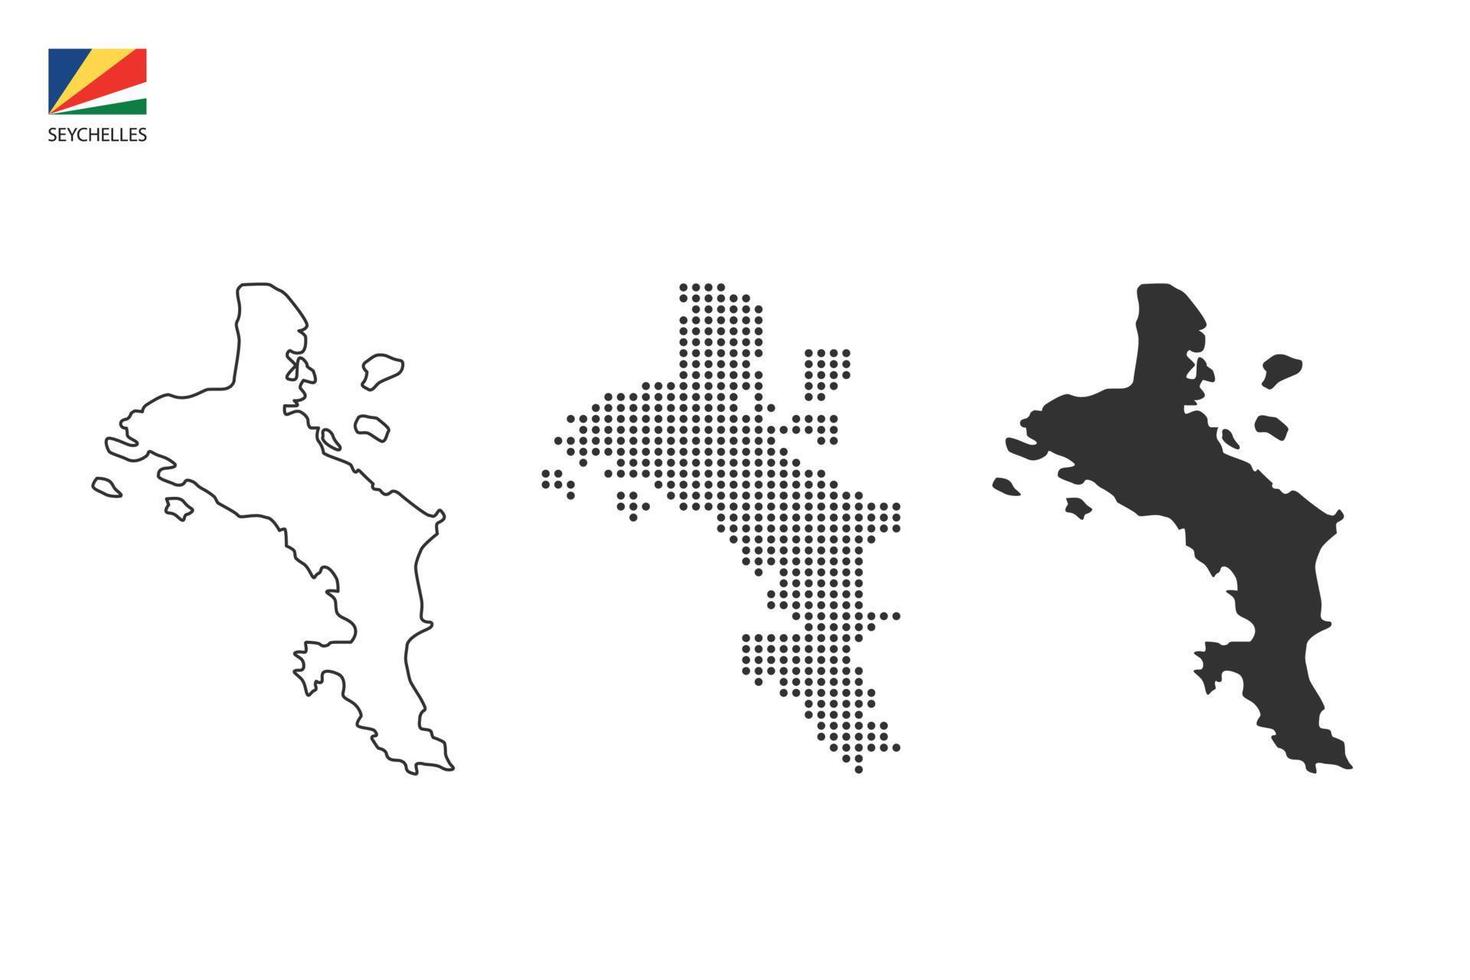 3 versions du vecteur de la ville de la carte des seychelles par un style de simplicité de contour noir fin, un style de point noir et un style d'ombre sombre. le tout sur fond blanc.